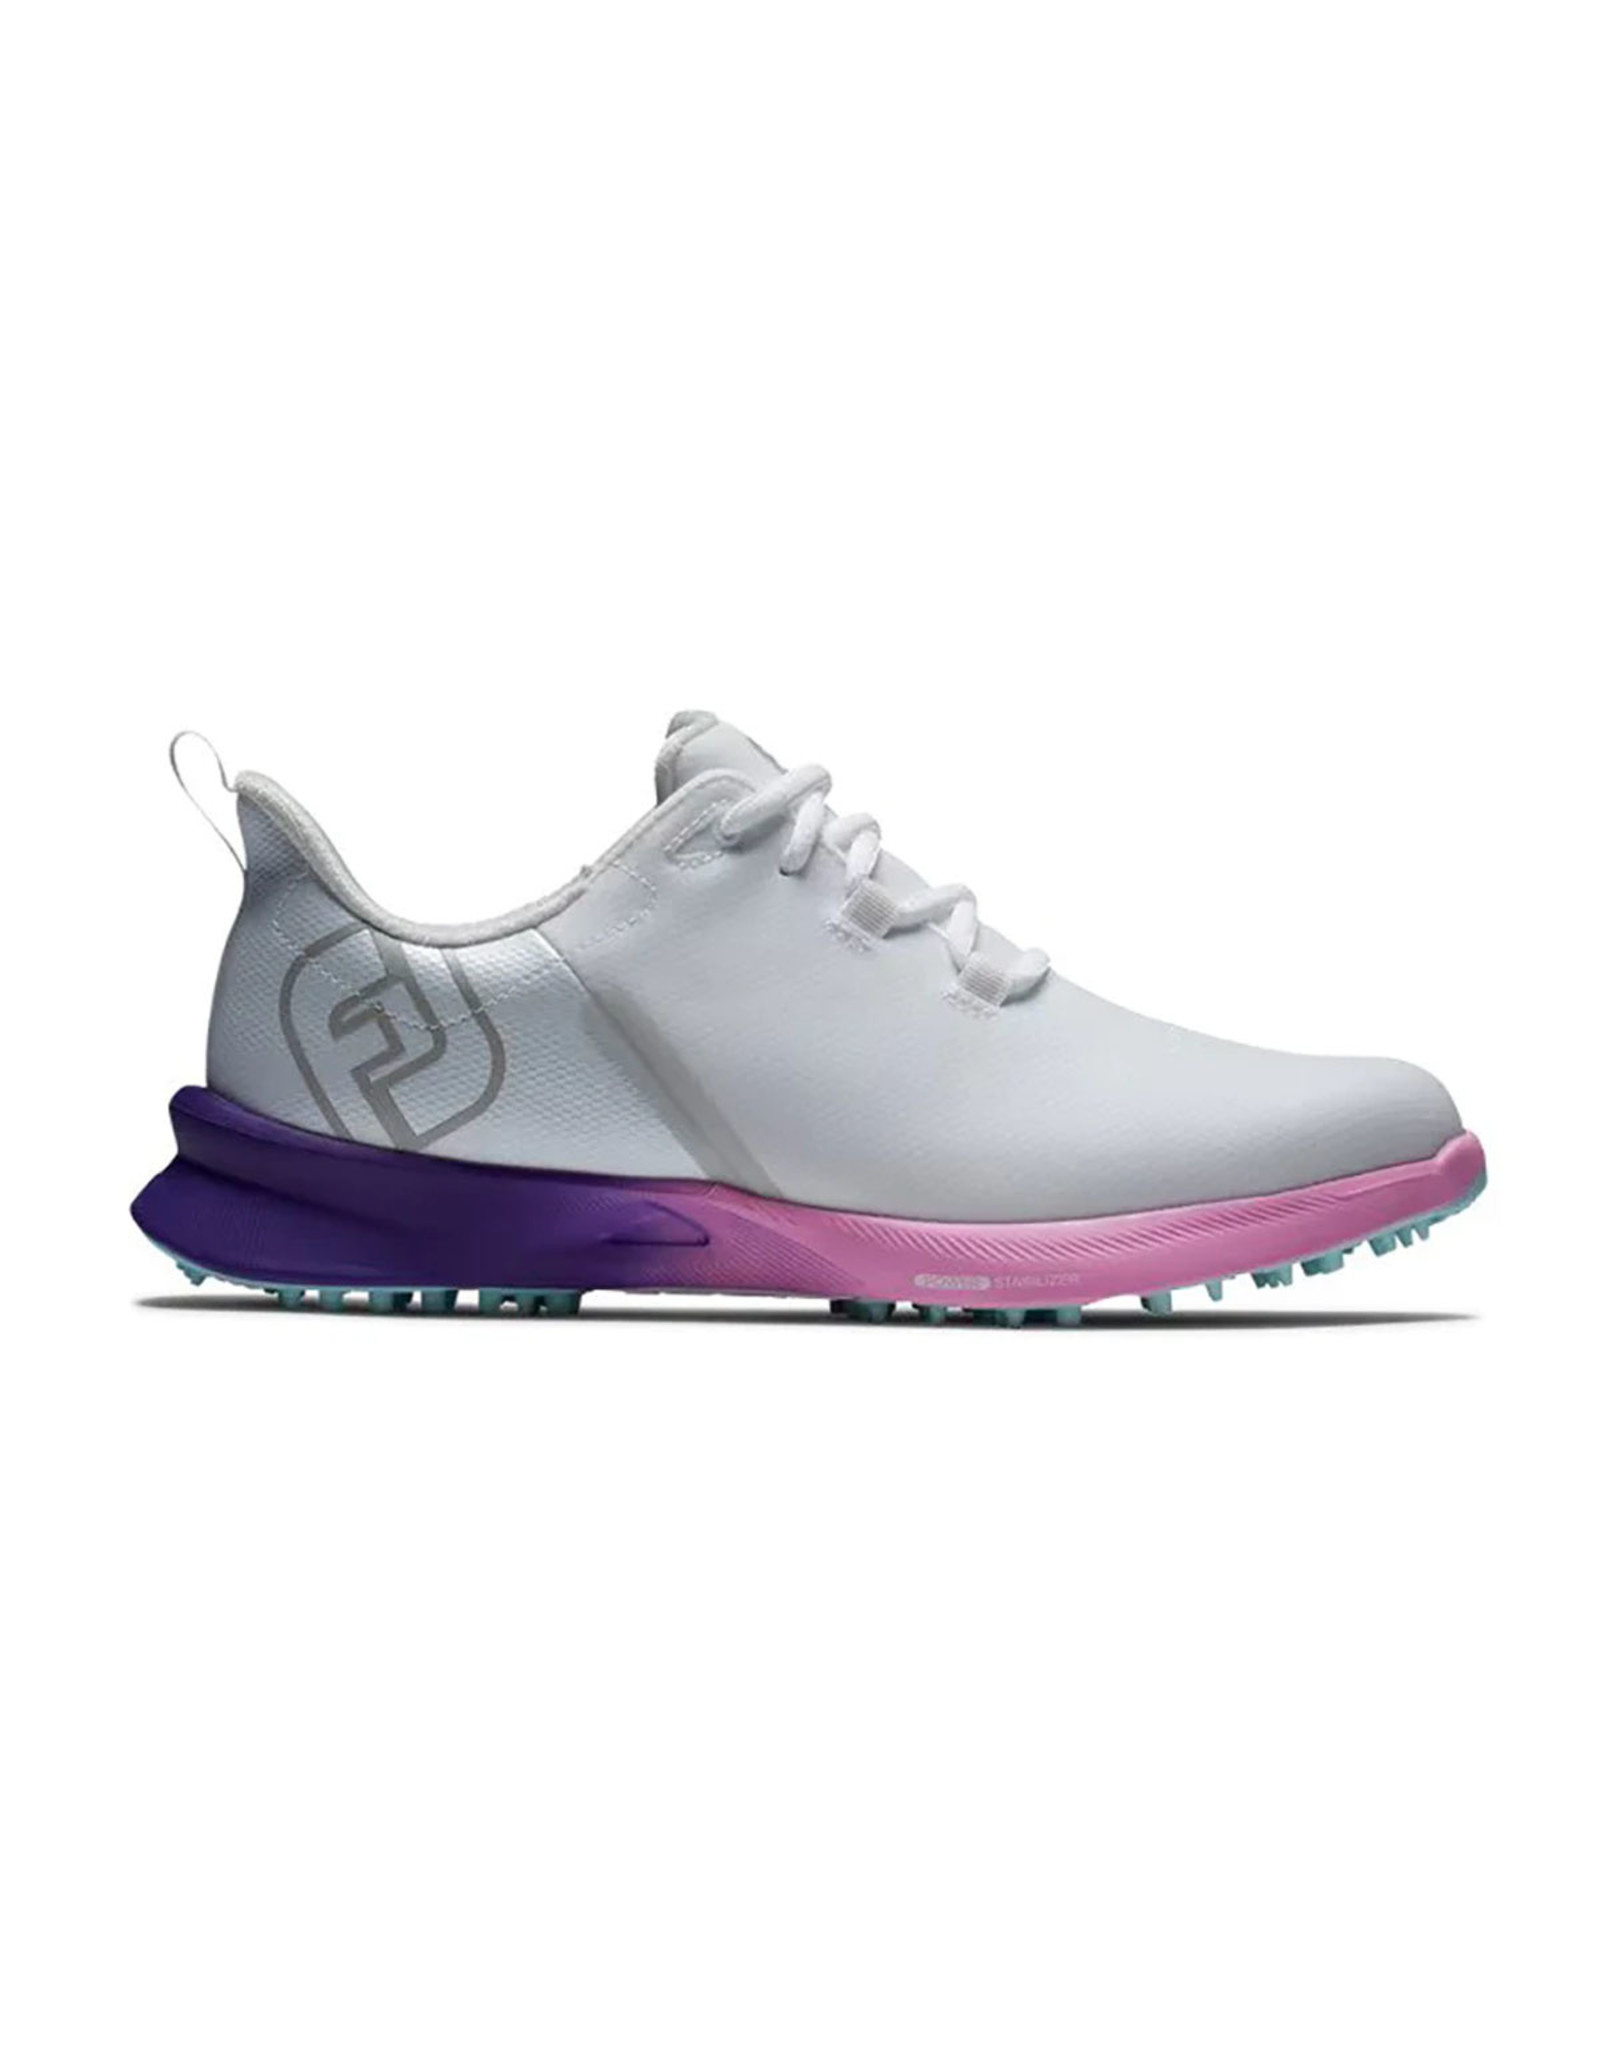 FootJoy FootJoy Women's Fuel Sport White/Pink Golf Shoes